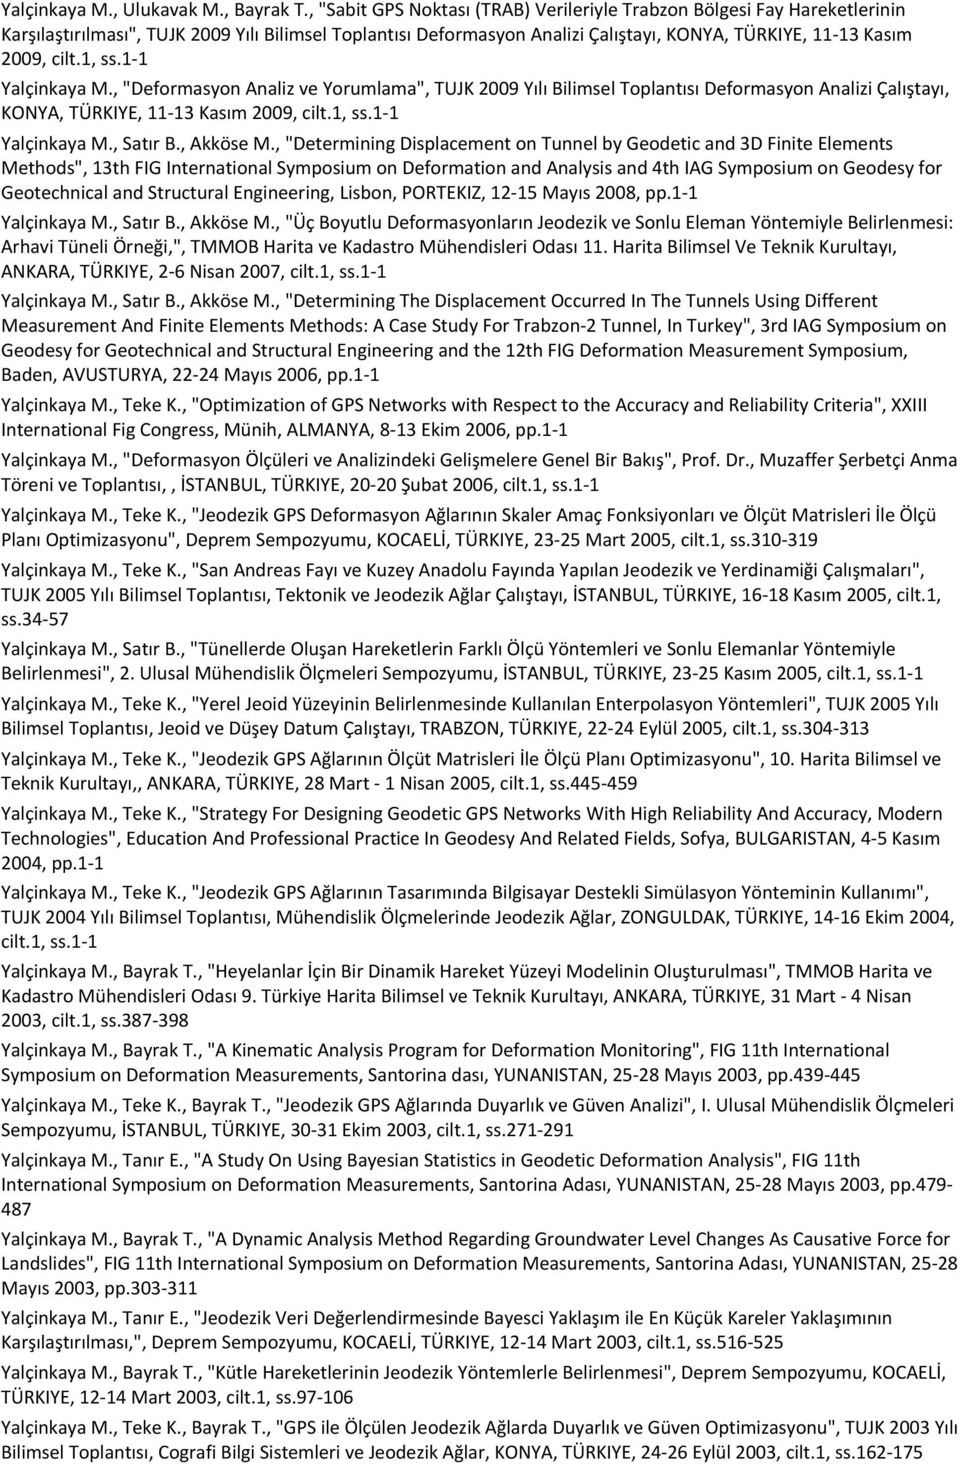 1, ss.1 1 Yalçinkaya M., "Deformasyon Analiz ve Yorumlama", TUJK 2009 Yılı Bilimsel Toplantısı Deformasyon Analizi Çalıştayı, KONYA, TÜRKIYE, 11 13 Kasım 2009, cilt.1, ss.1 1 Yalçinkaya M., Satır B.